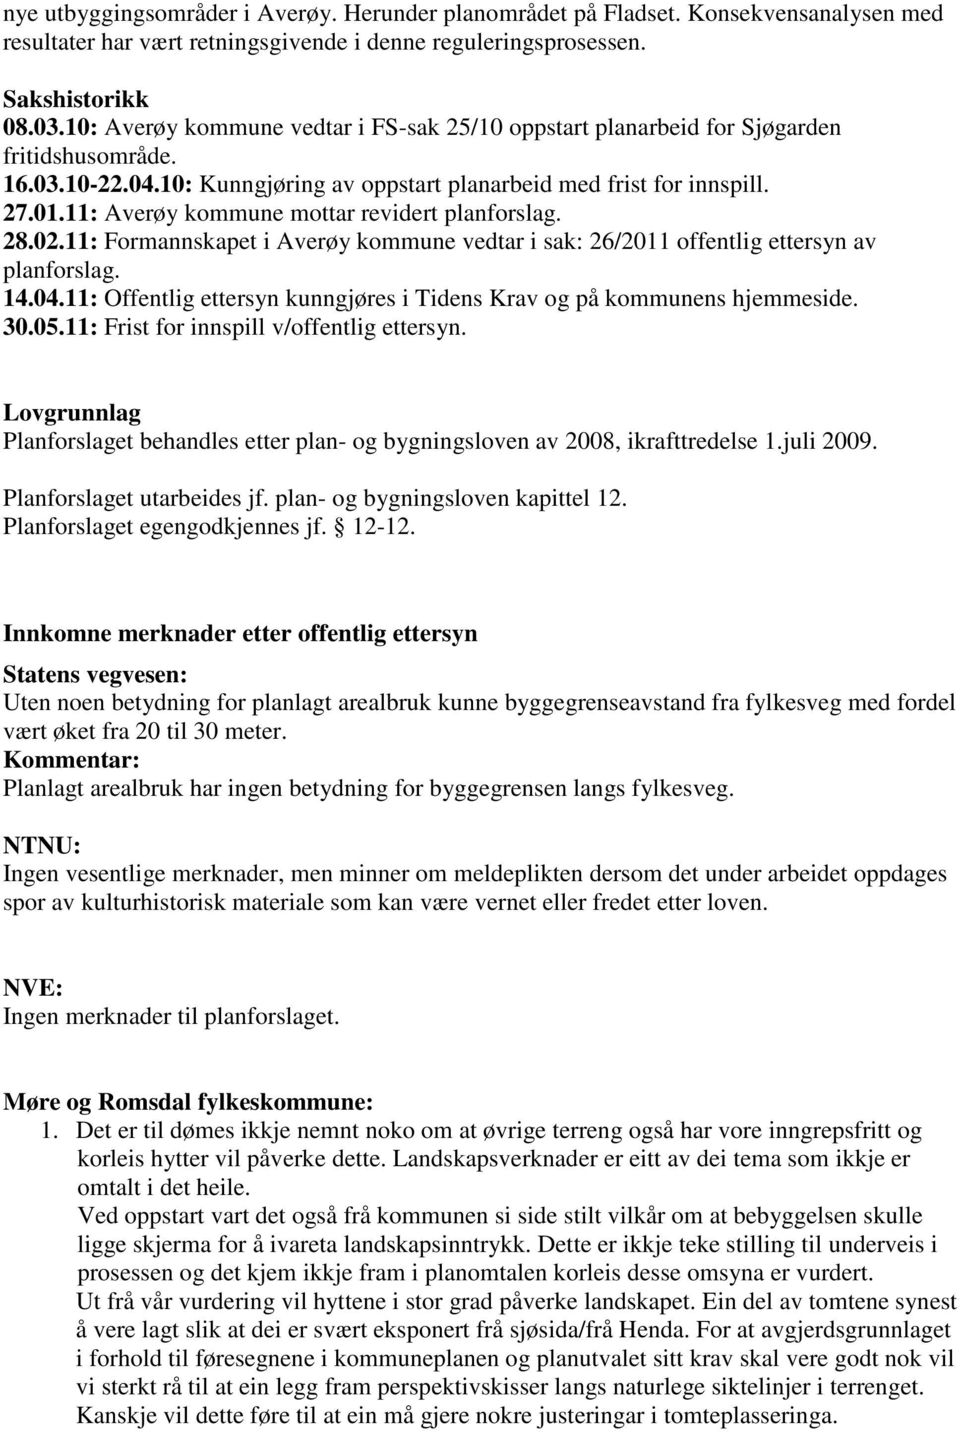 11: Averøy kommune mottar revidert planforslag. 28.02.11: Formannskapet i Averøy kommune vedtar i sak: 26/2011 offentlig ettersyn av planforslag. 14.04.